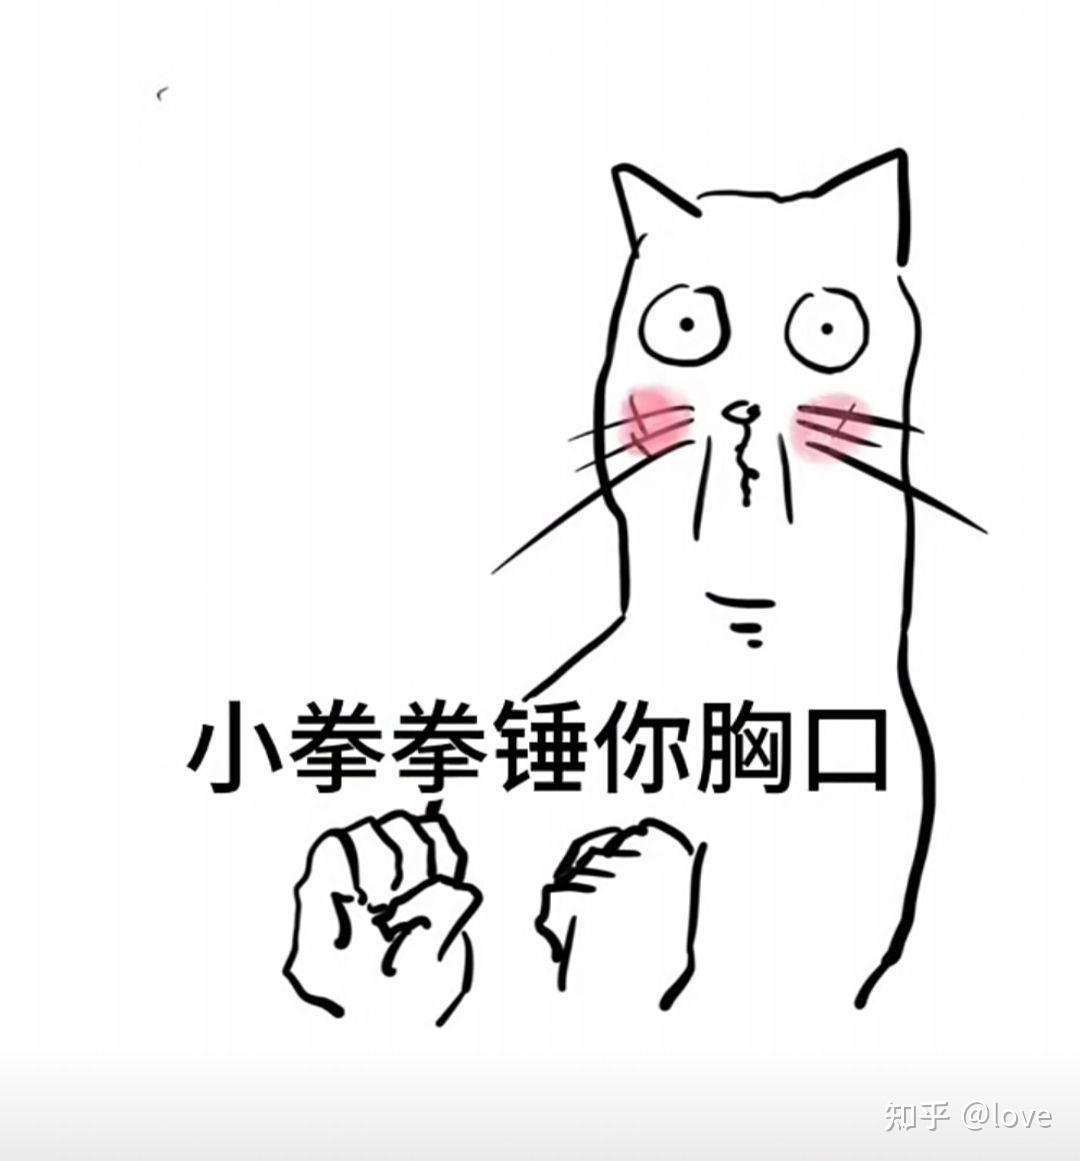 法国人怎么看中国网红Thurman猫一杯? - 哔哩哔哩